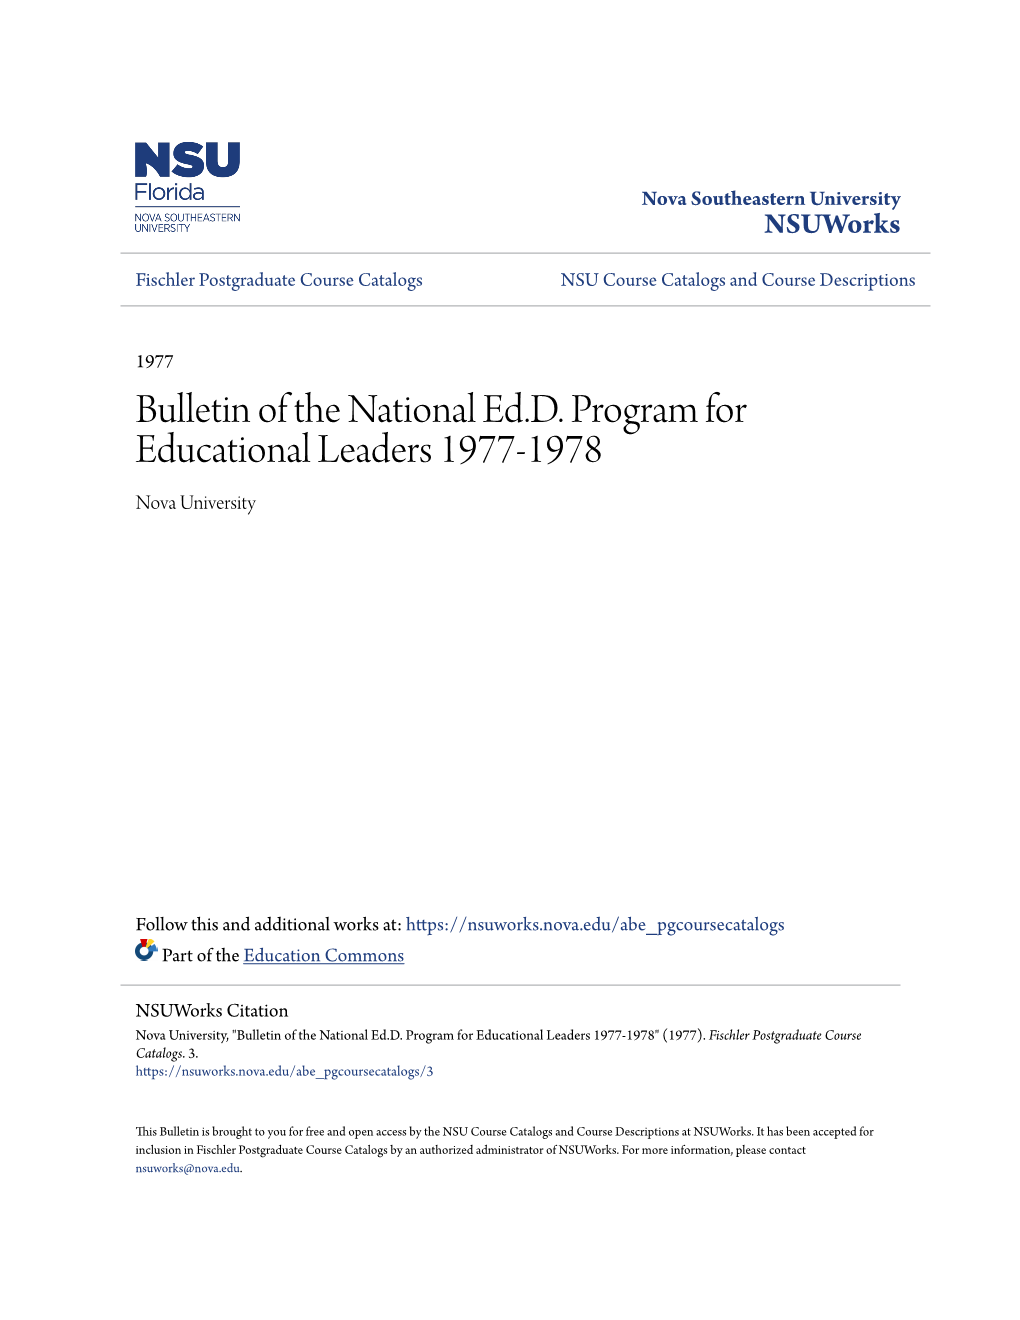 Bulletin of the National Ed.D. Program for Educational Leaders 1977-1978 Nova University